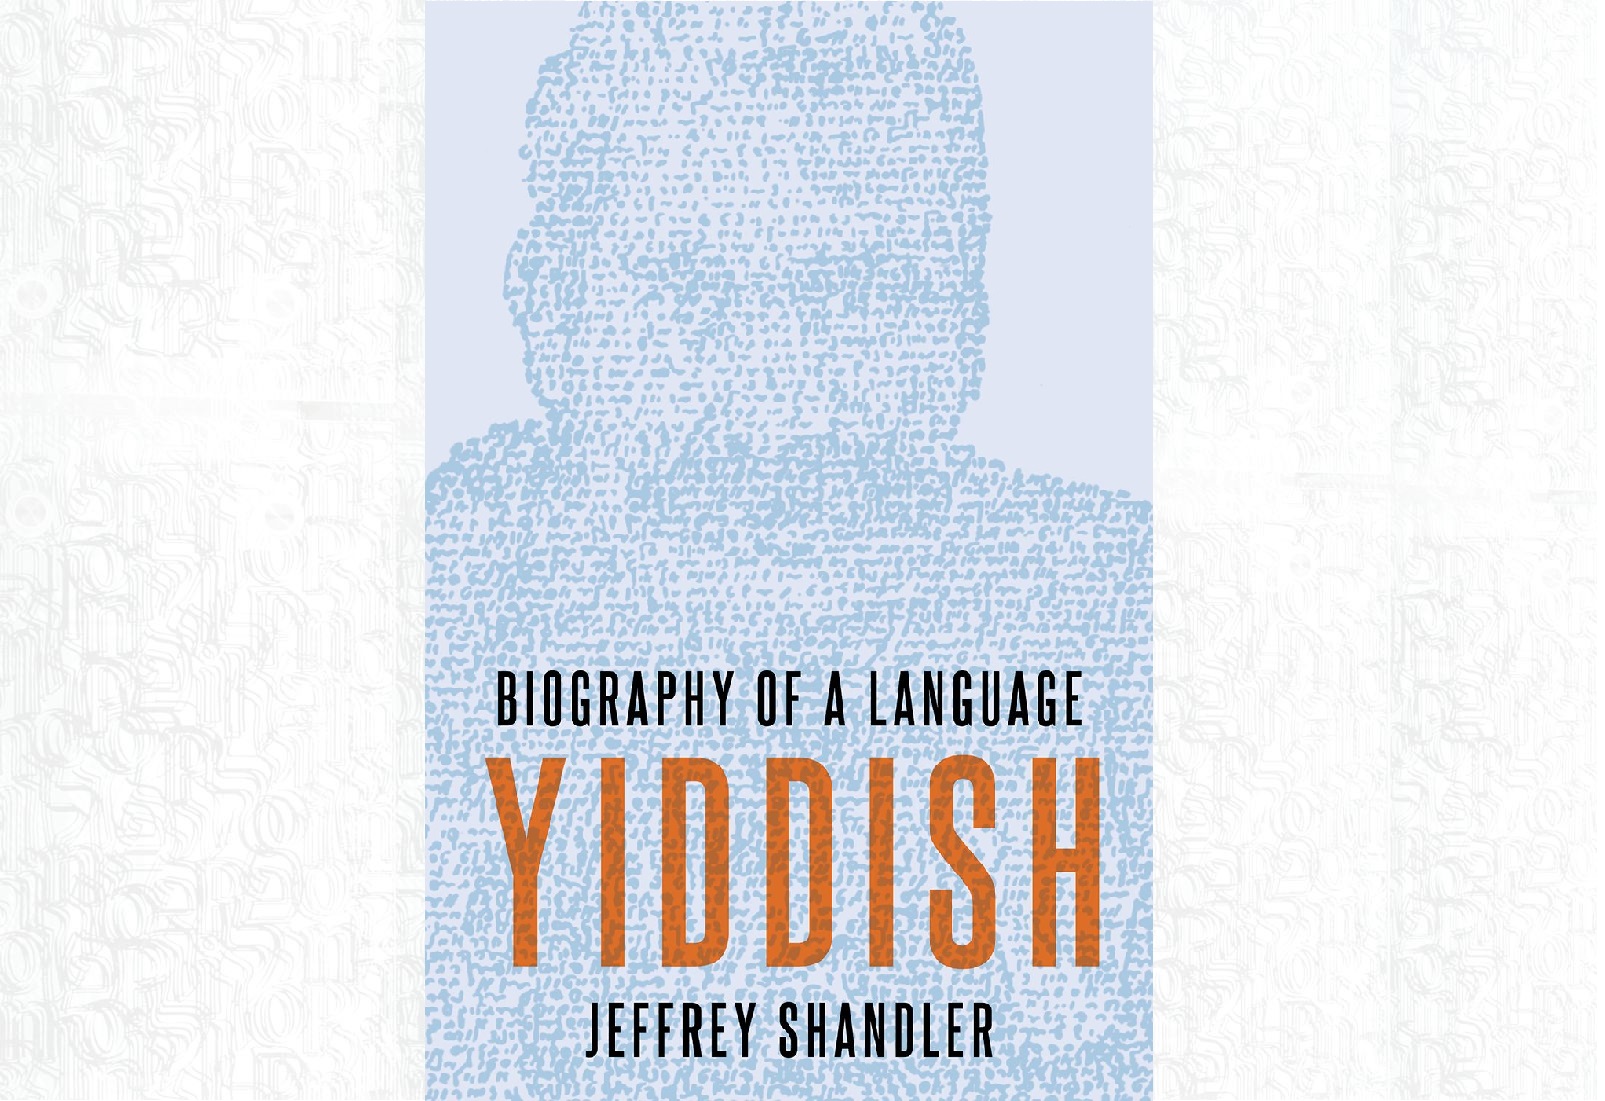 Na obrazie widzimy okładkę książki "Jidysz: Biografia języka".